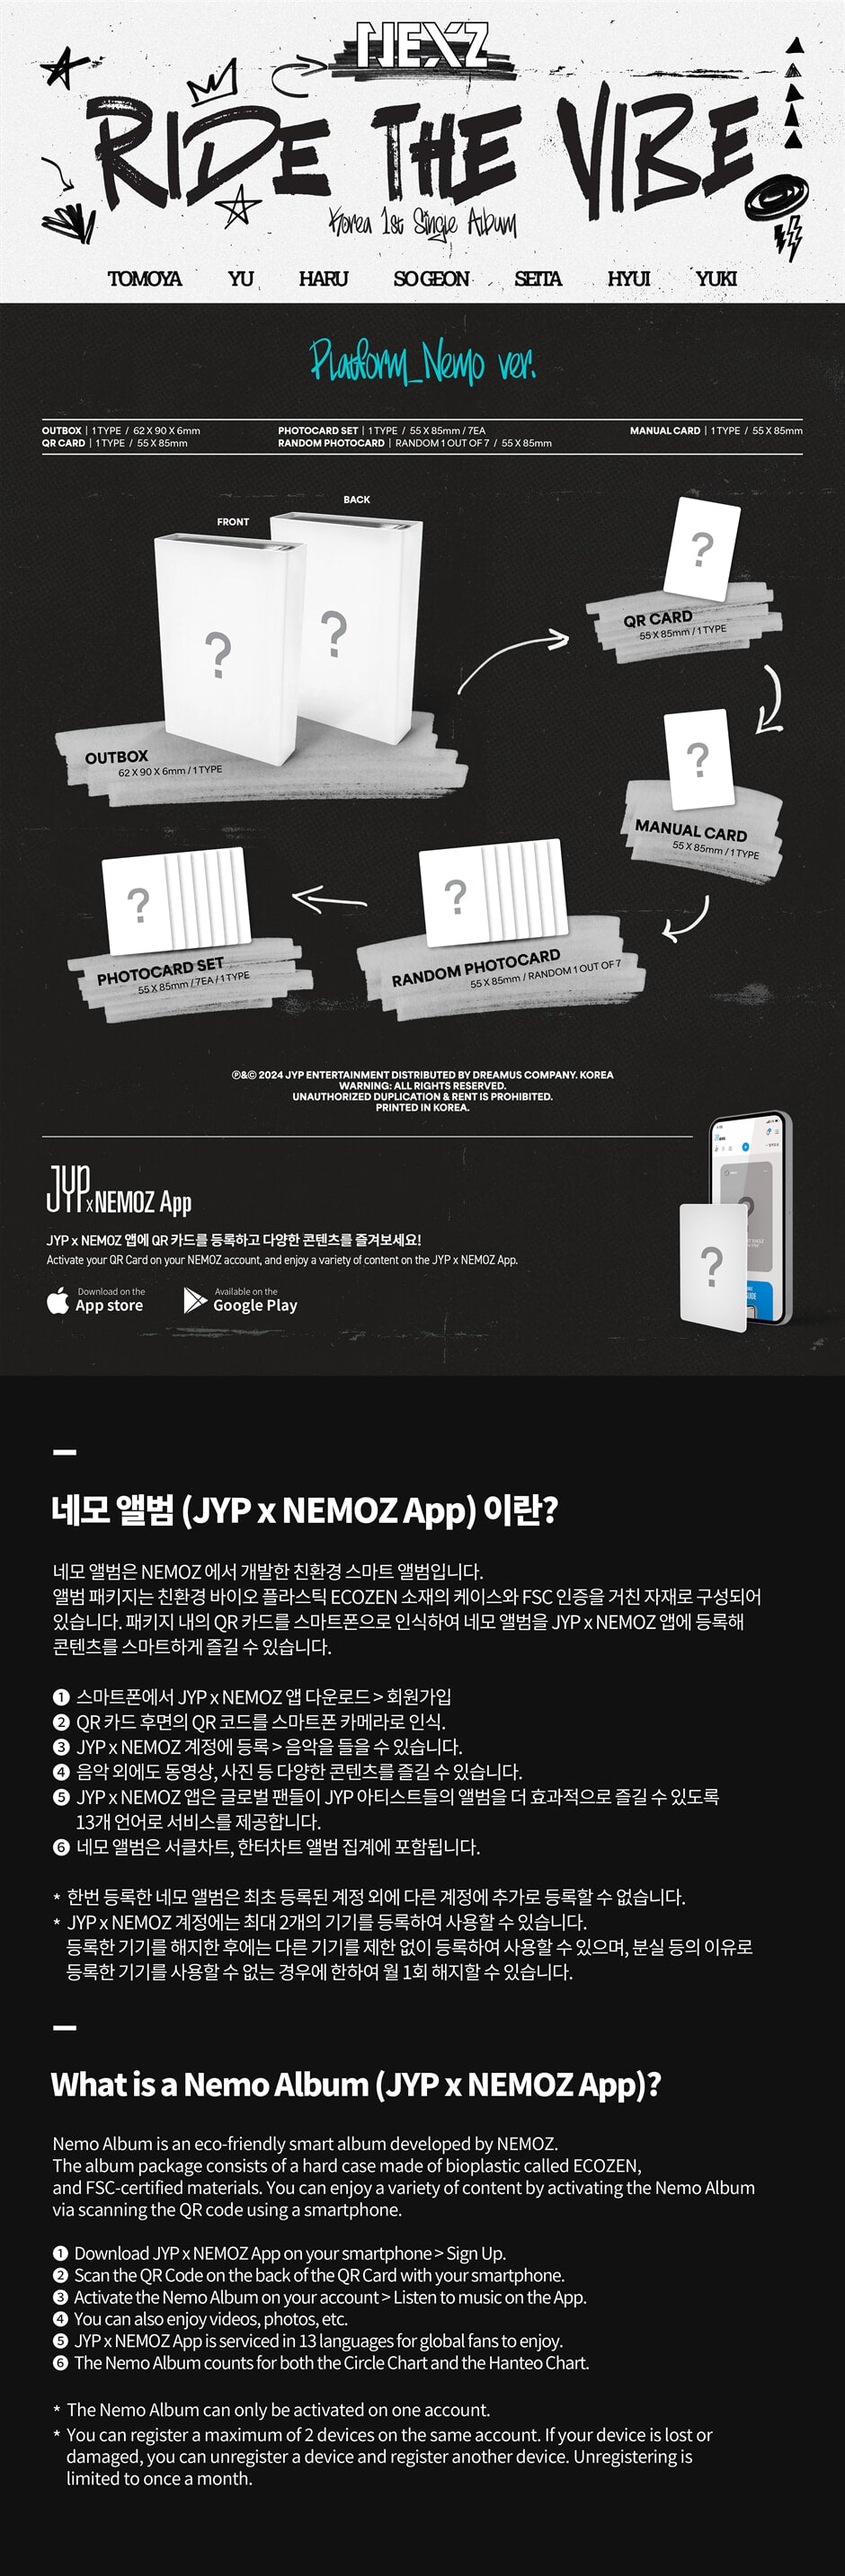 NEXZ Korea 1st Single Album 'Ride the Vibe' (Platform Nemo)